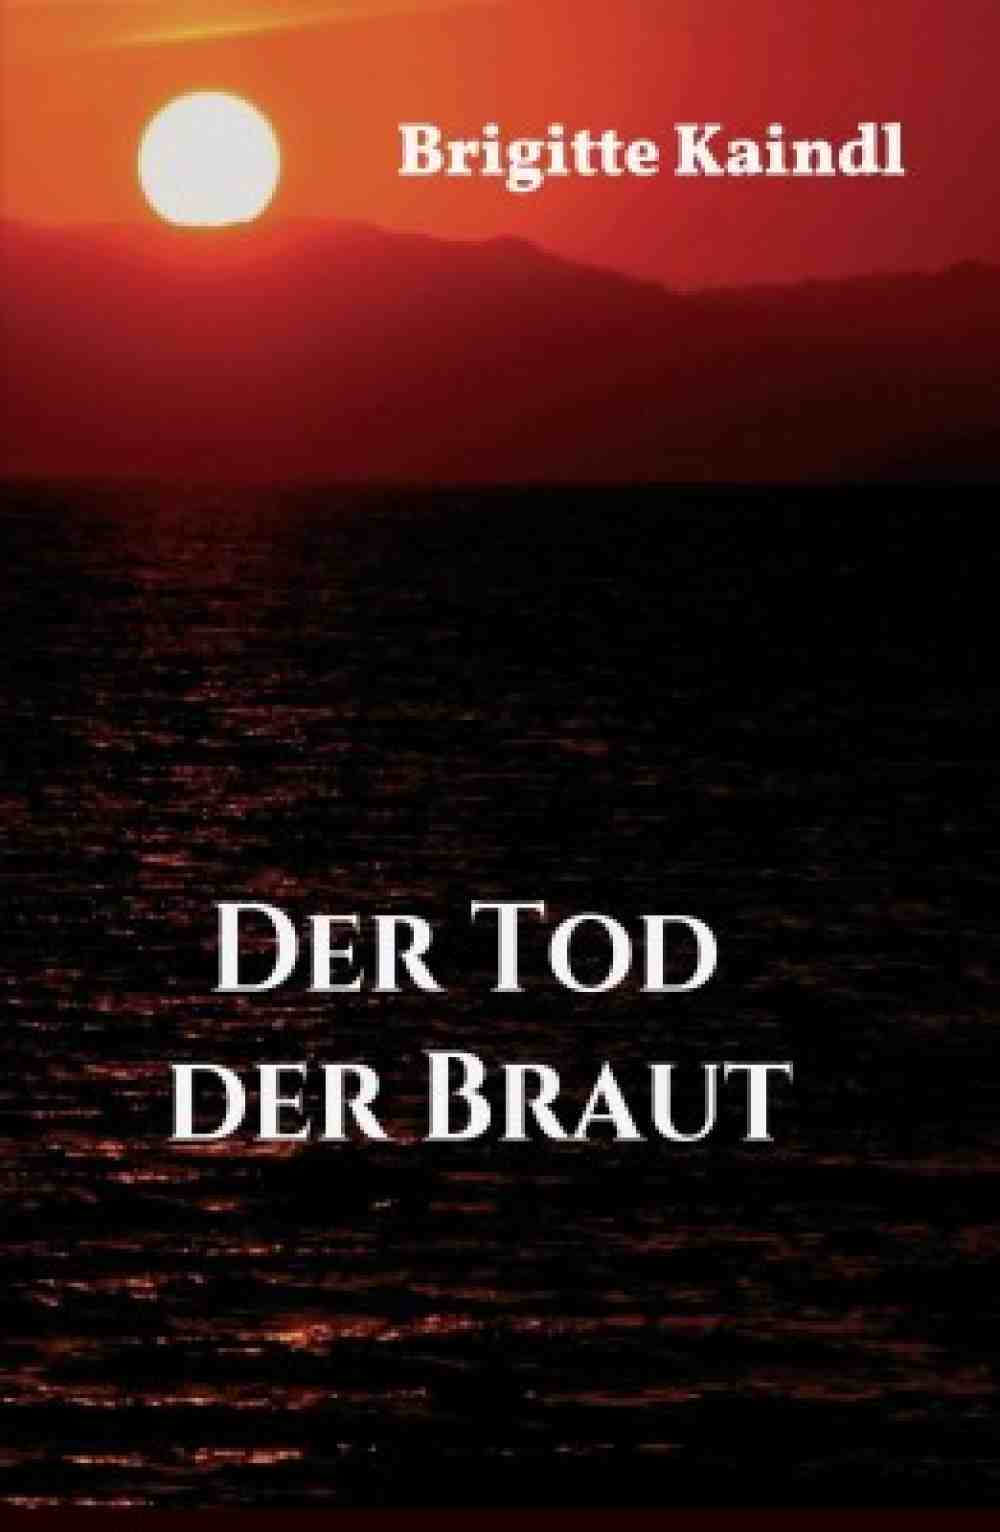 Anzeige: Lesetipps für Gütersloh, Brigitte Kaindl, »Der Tod der Braut«, jetzt online bestellen